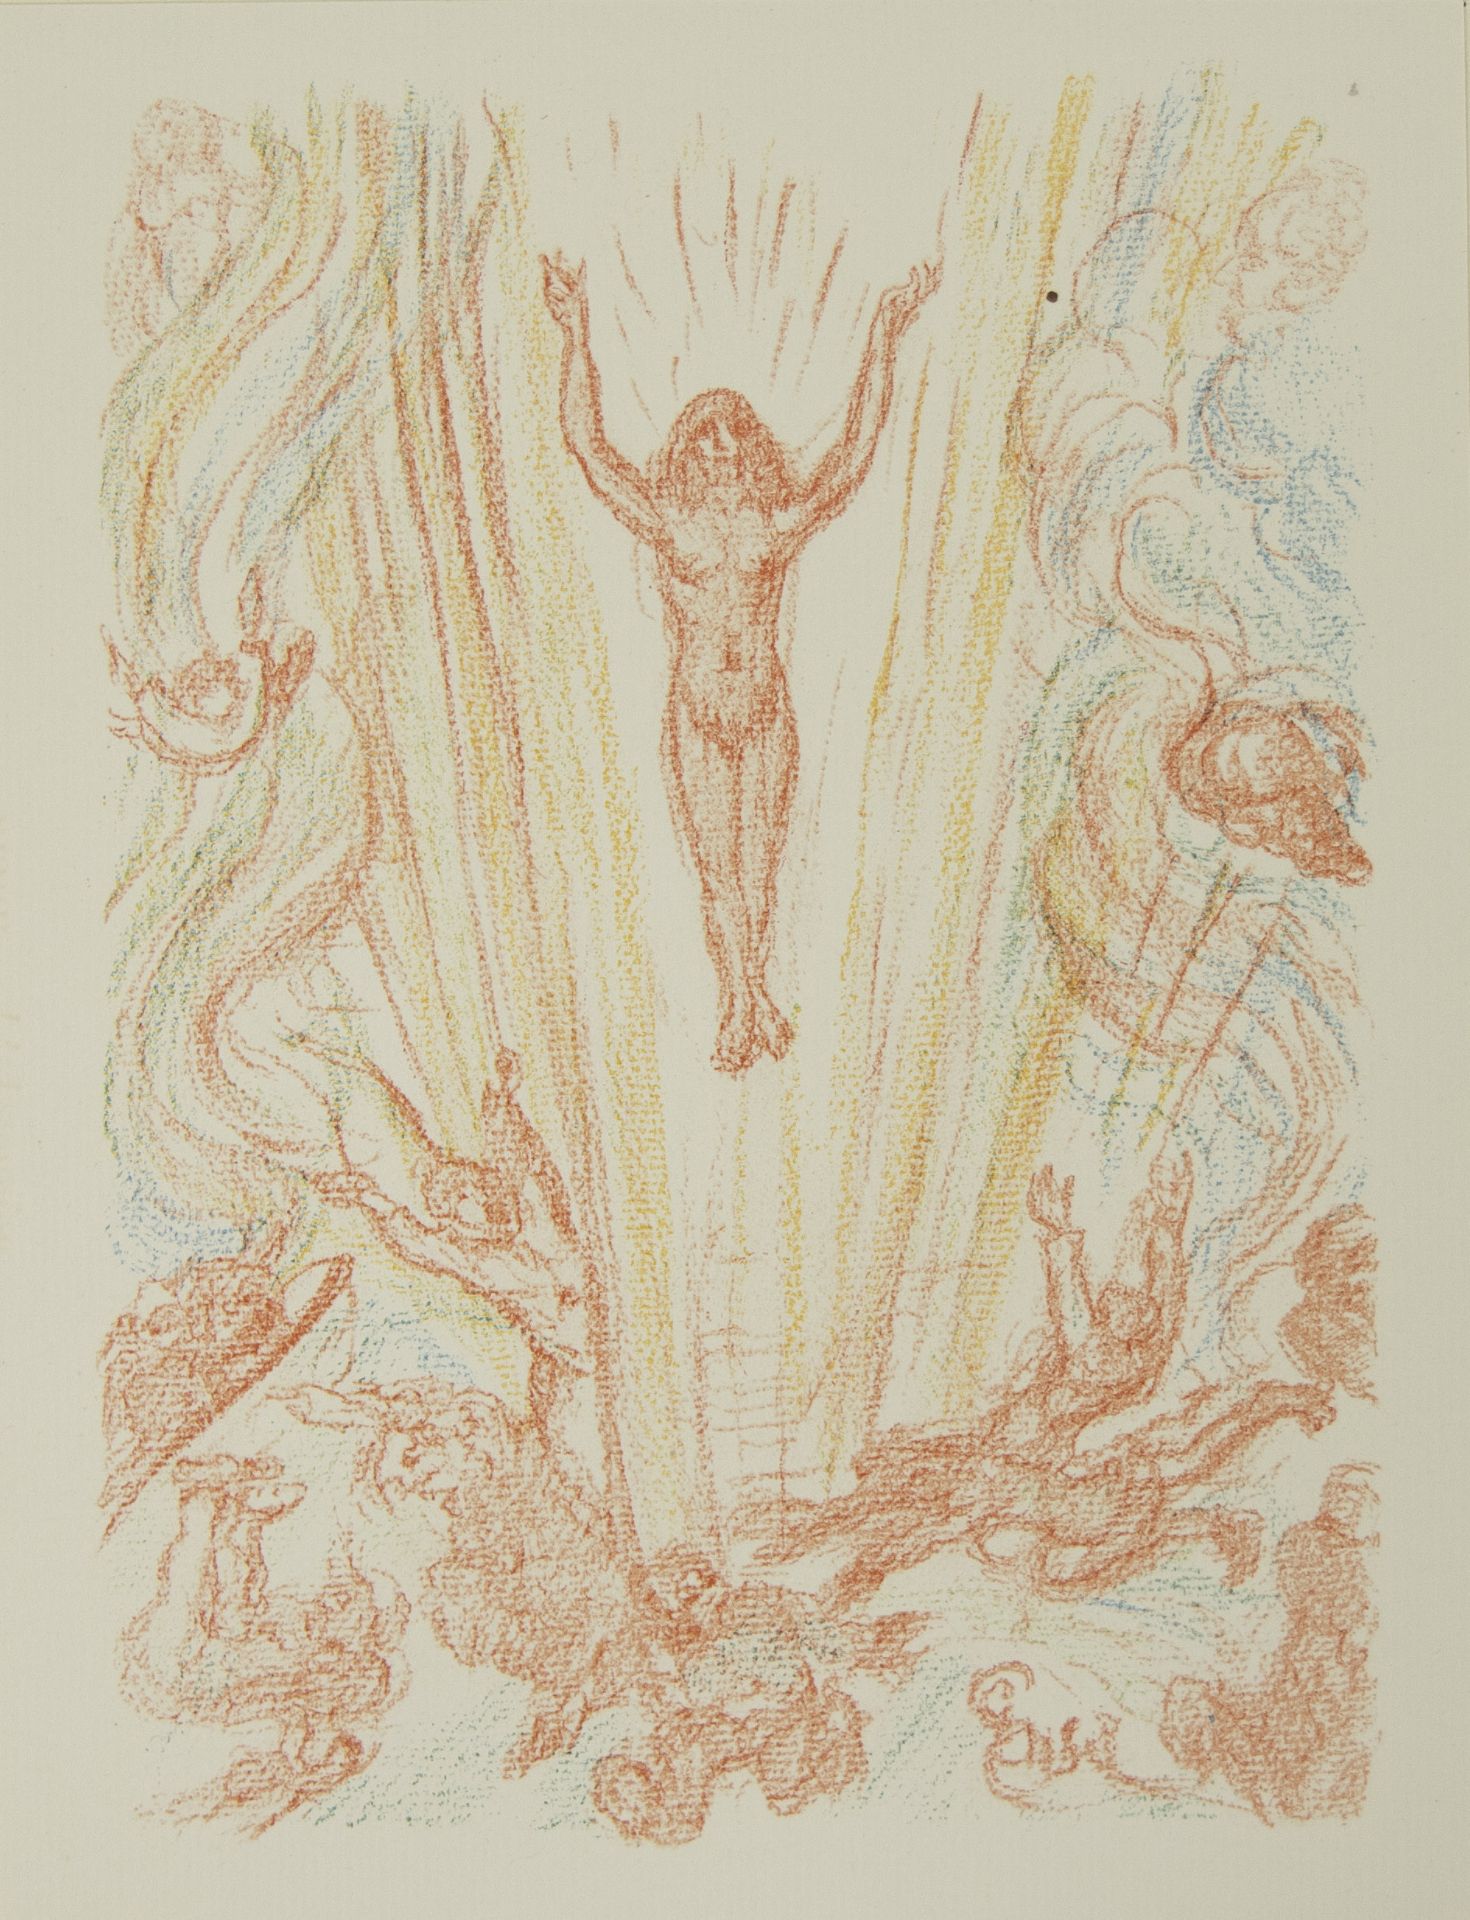 James ENSOR (1860-1949), lithograph from Scènes de la vie du Christ, XXVIII, L'Ascension 1921, from